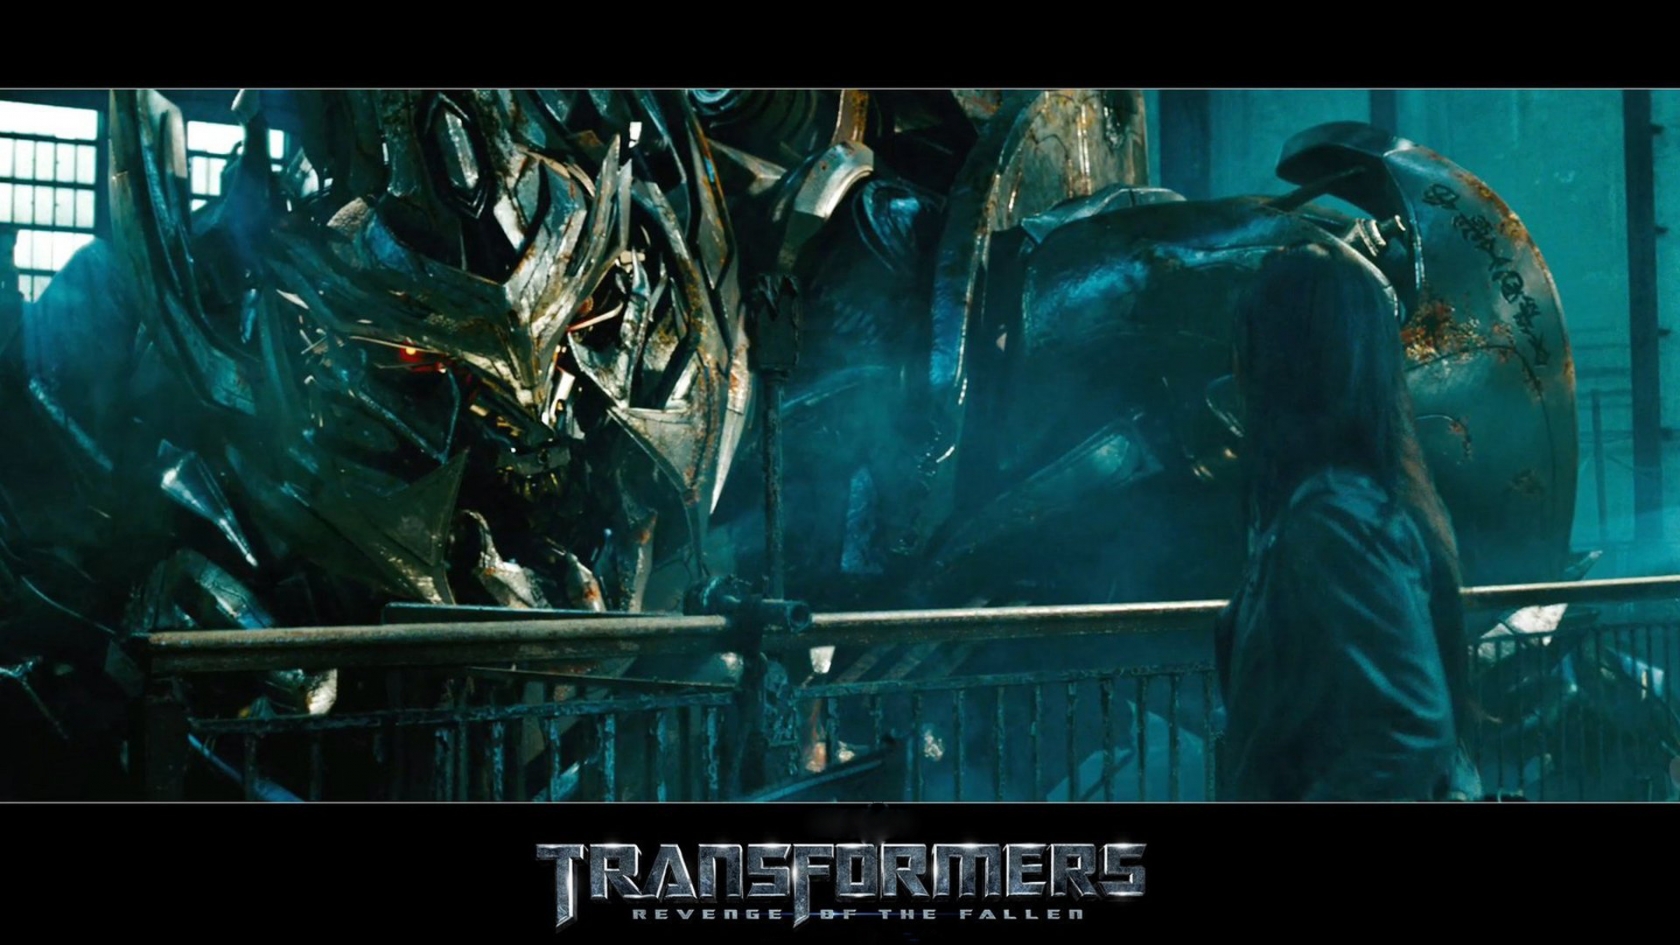 Transformers Revenge of the Fallen for 1680 x 945 HDTV resolution